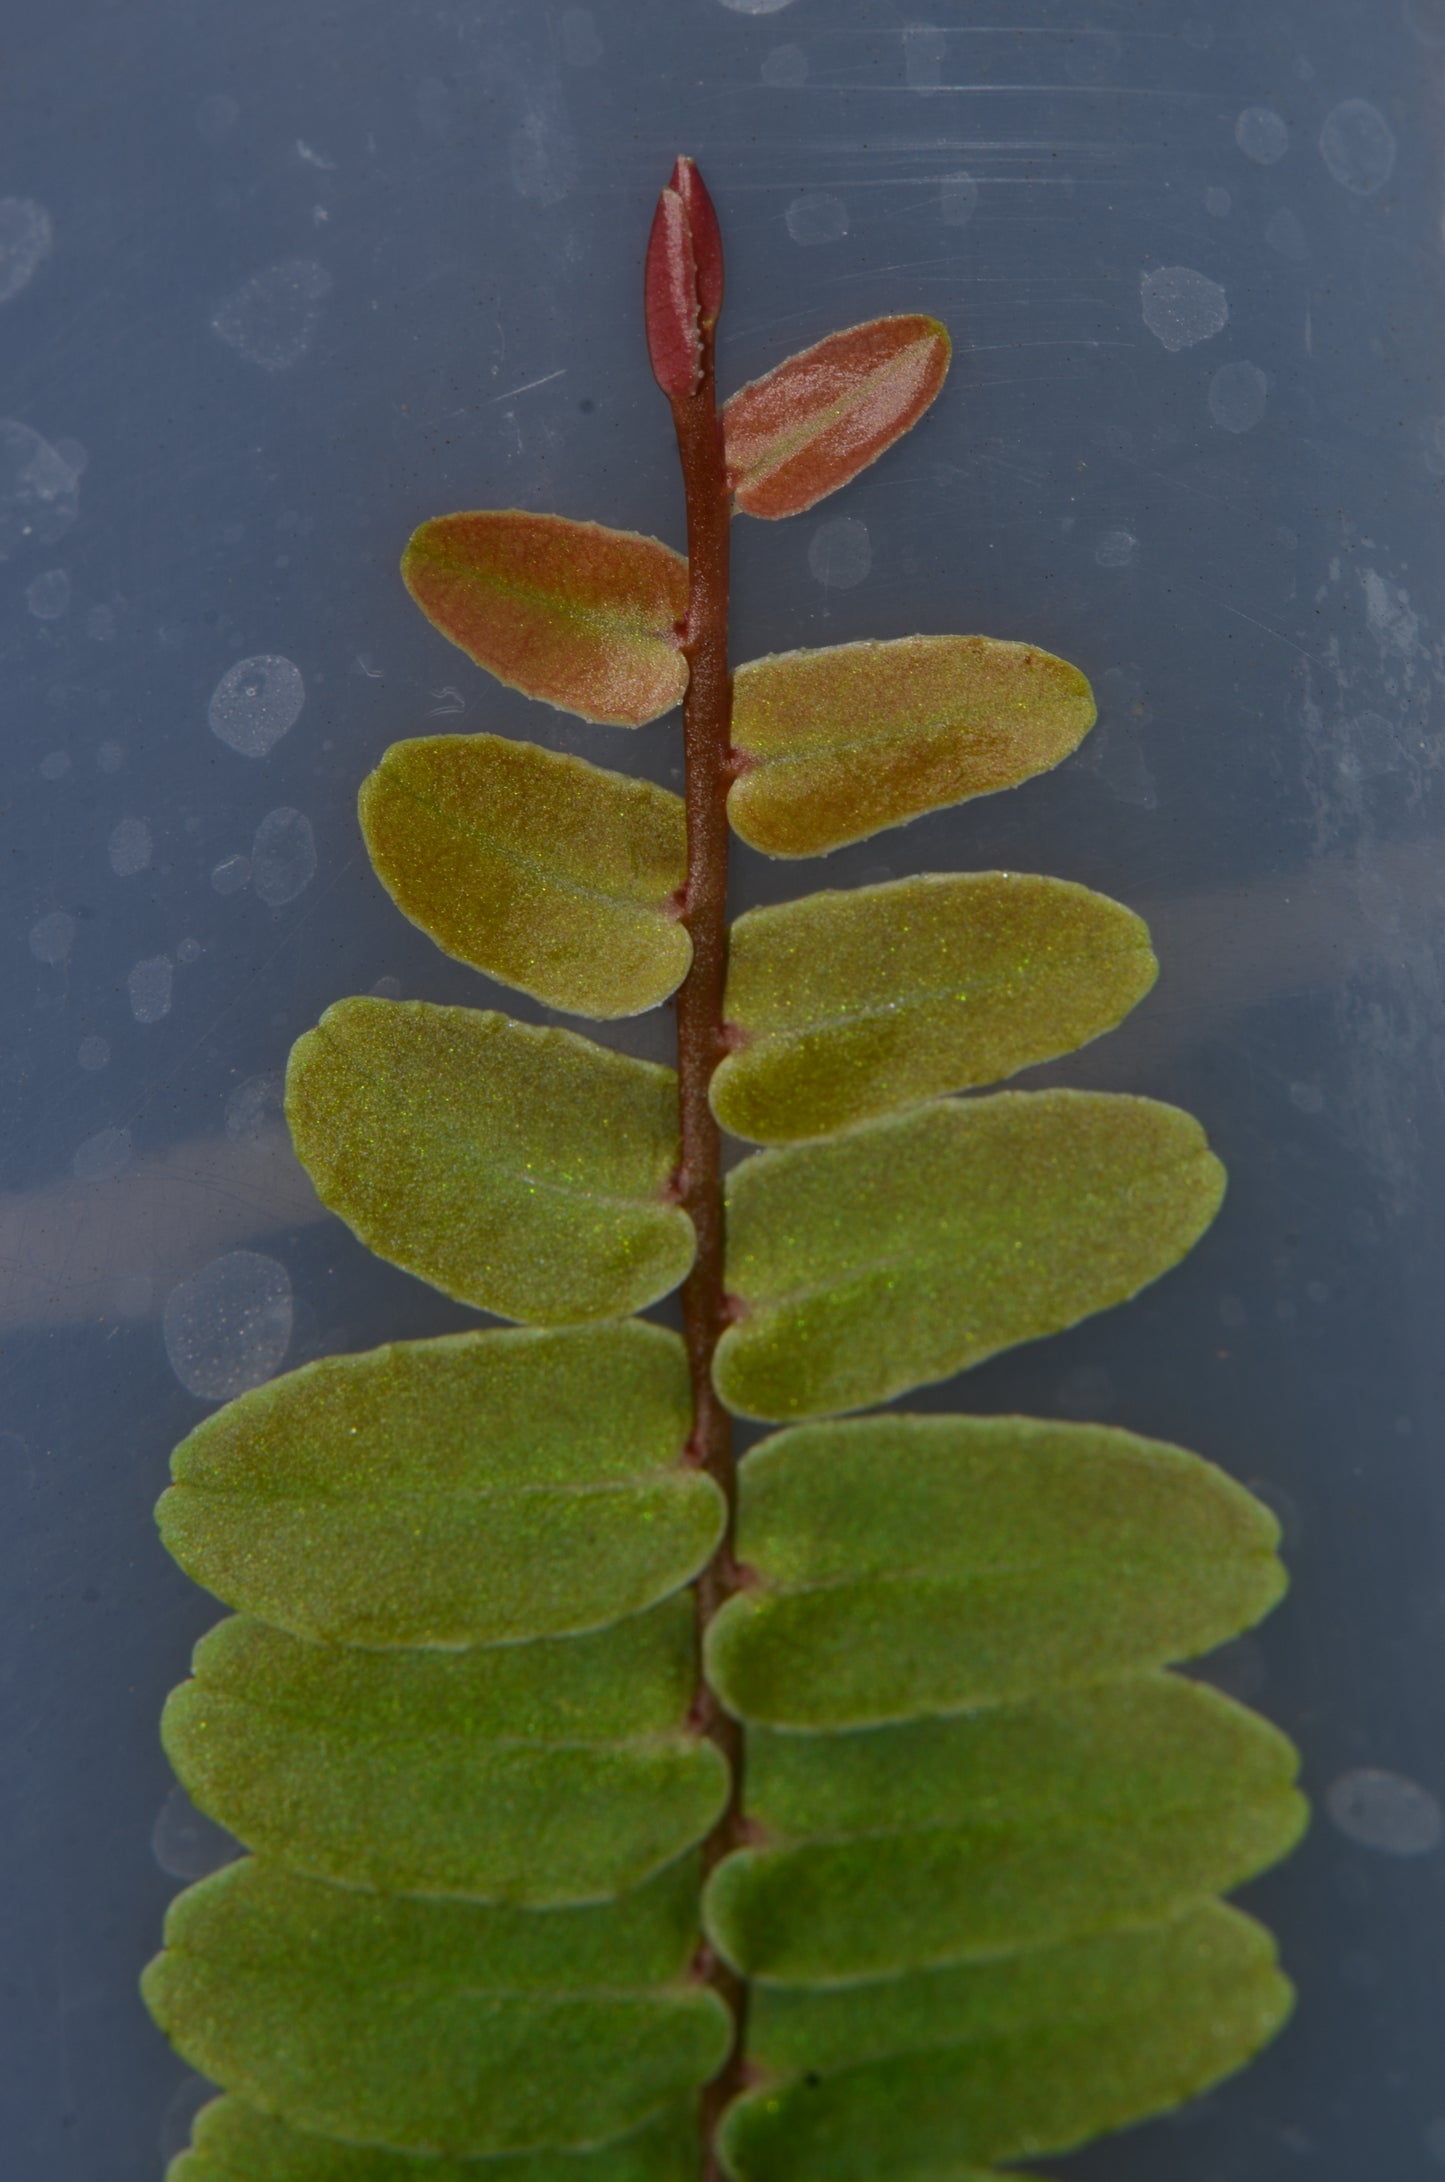 Marcgravia aff. rectifolia "Peru"